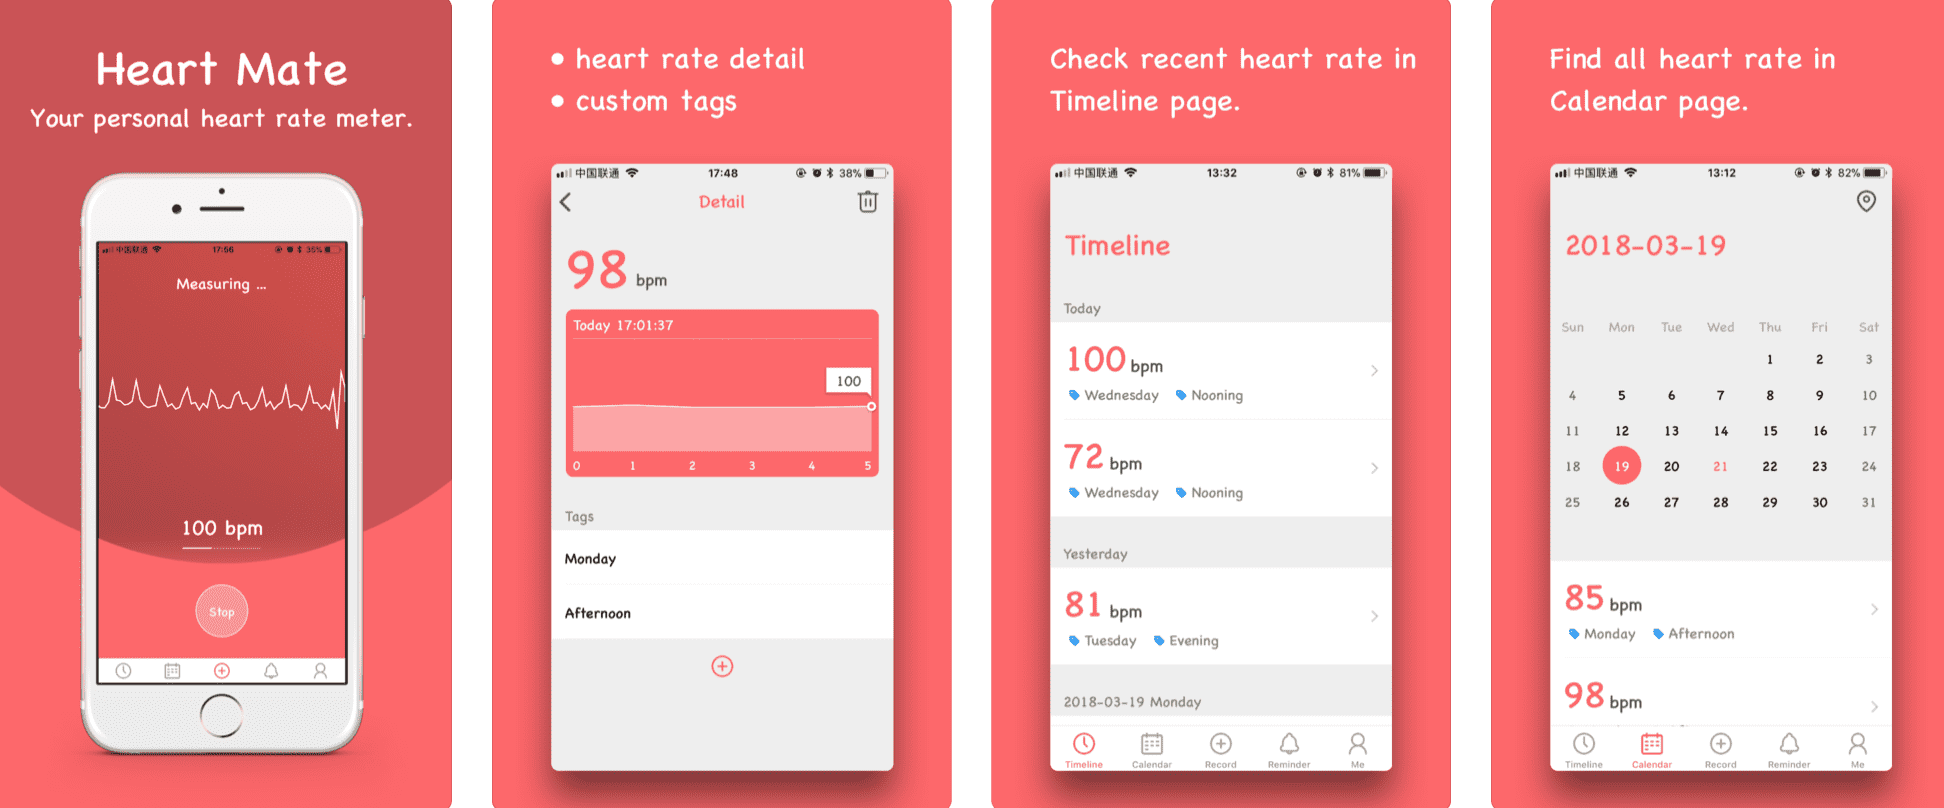 Heart Mate - kolejna apka monitorująca pracę serca dostępna za darmo gry-i-aplikacje Za darmo, Przecena, Promocja, iPhone, Heart Mate, AppStore, Apple  Heart Mate to aplikacja, która właśnie została przeceniona i dostępna jest aktualnie w App Store zupełnie za darmo. heart 1